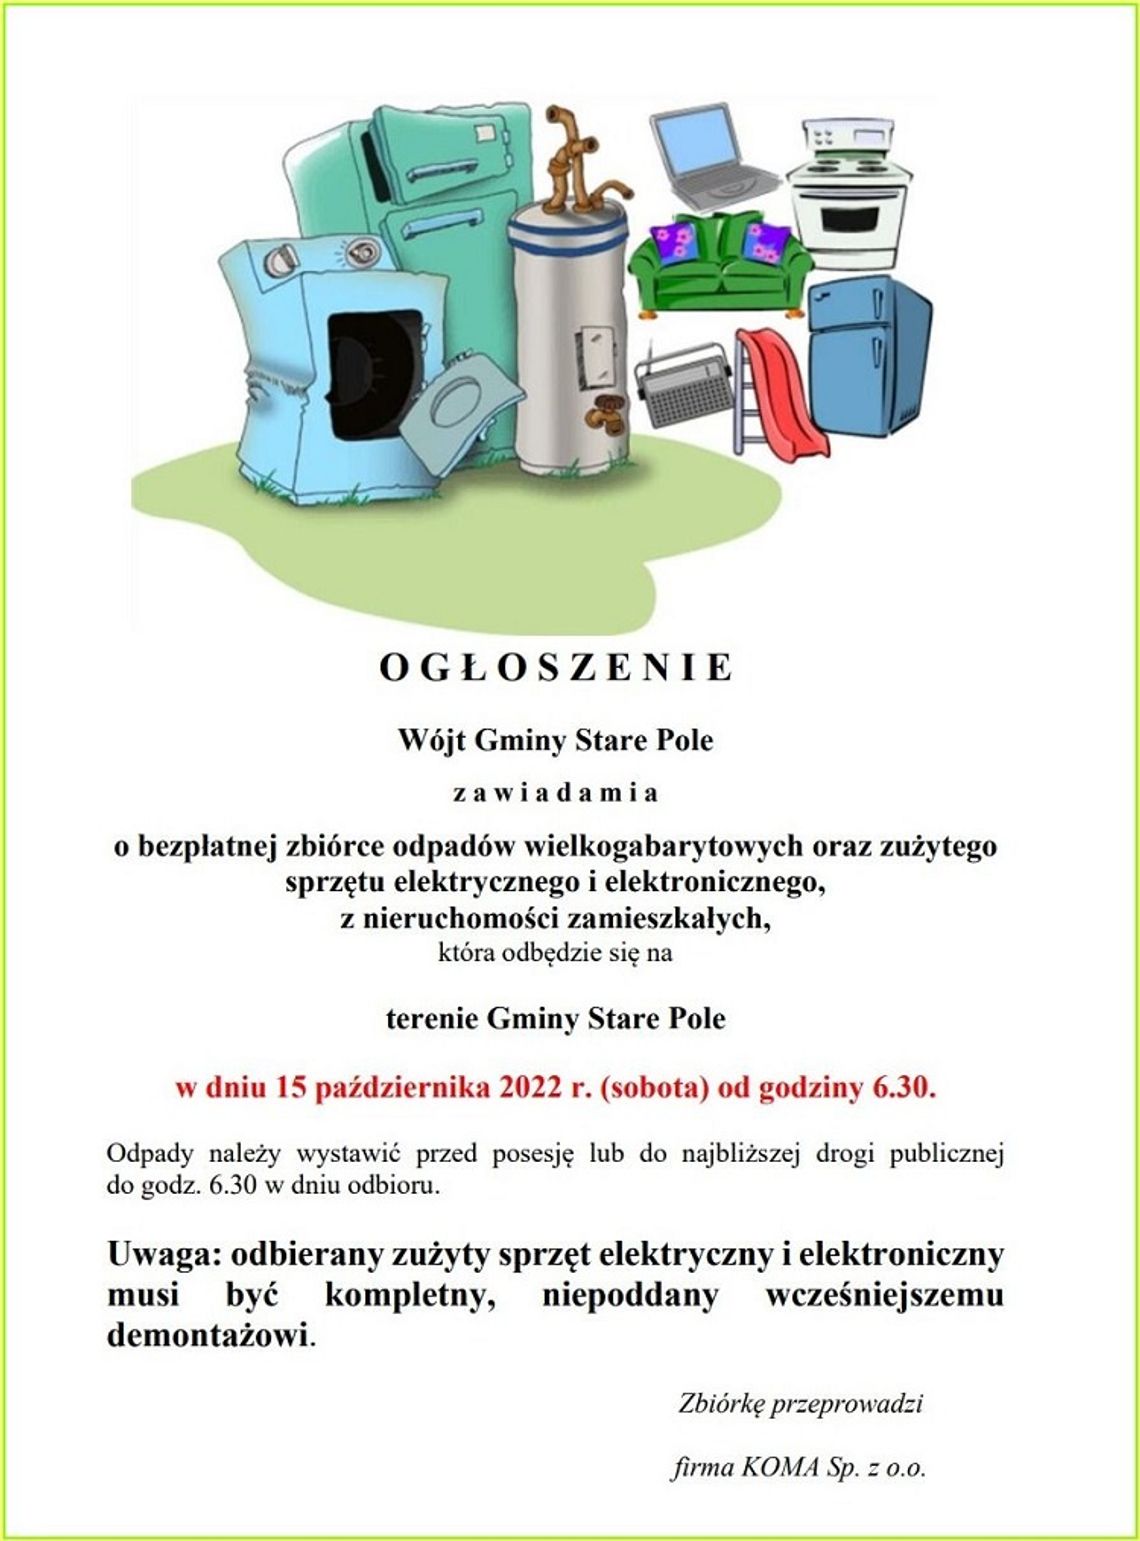 Gmina Stare Pole. Nieodpłatna zbiórka odpadów wielkogabarytowych oraz zużytego sprzętu elektrycznego i elektronicznego.